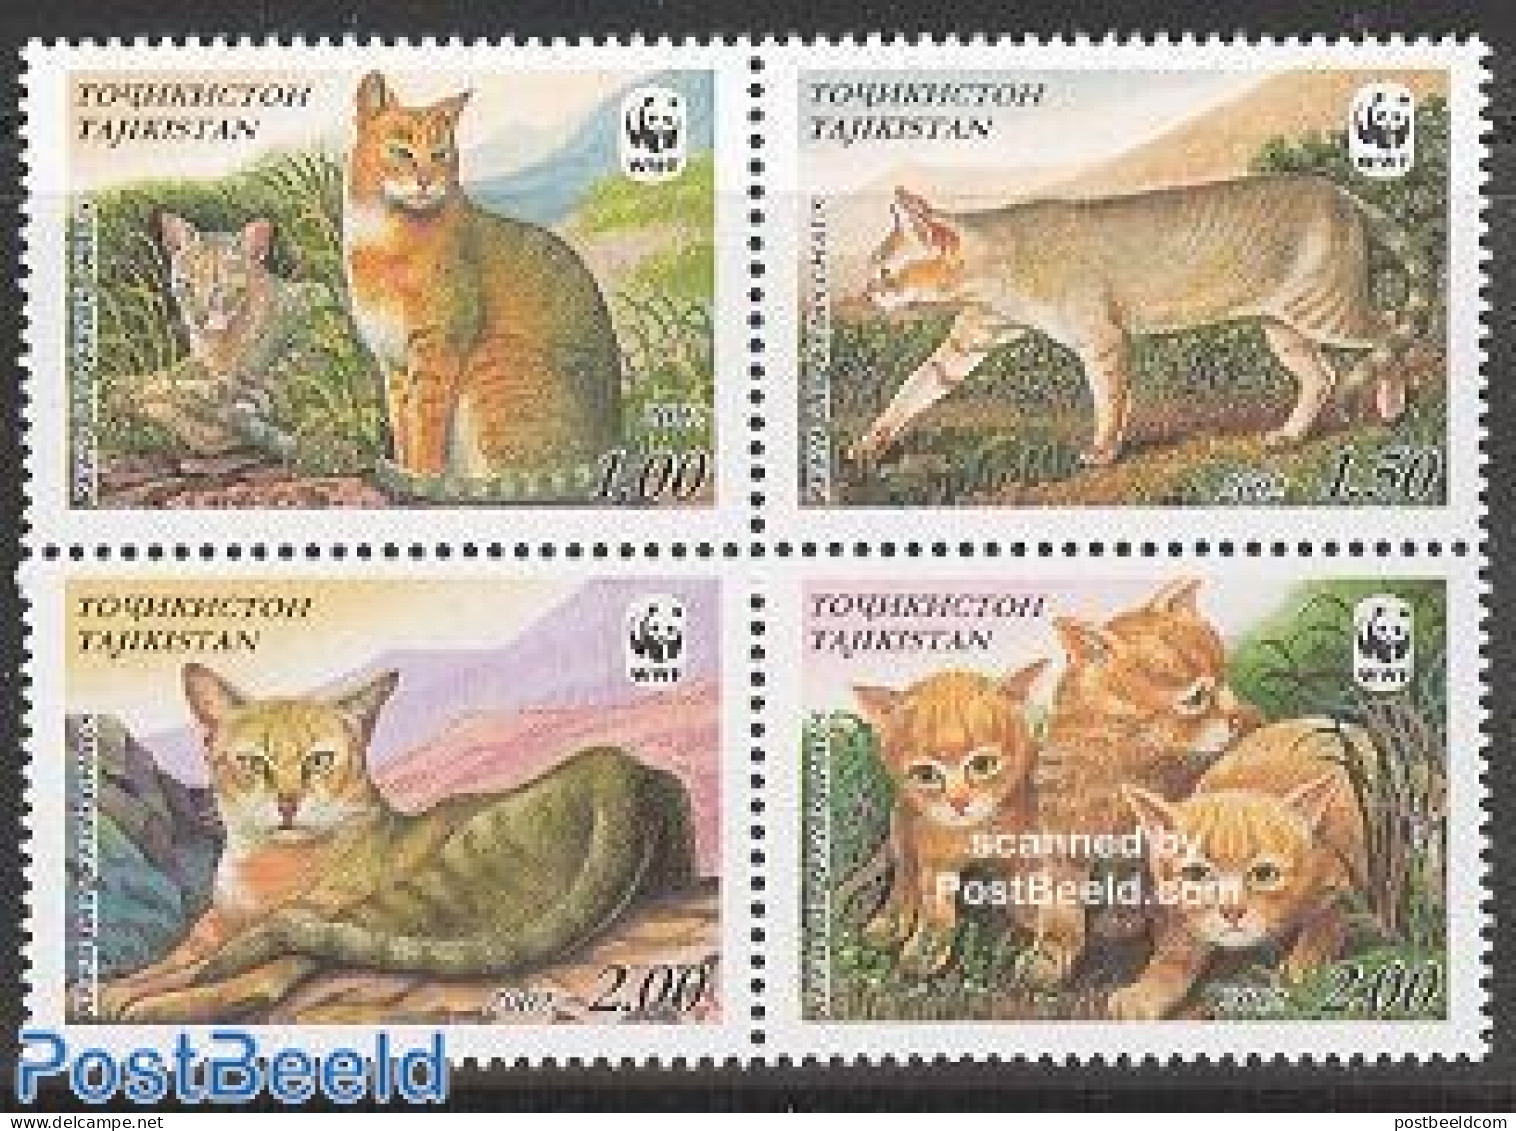 Tajikistan 2002 WWF, Cats 4v [+], Mint NH, Nature - Cats - World Wildlife Fund (WWF) - Tadjikistan